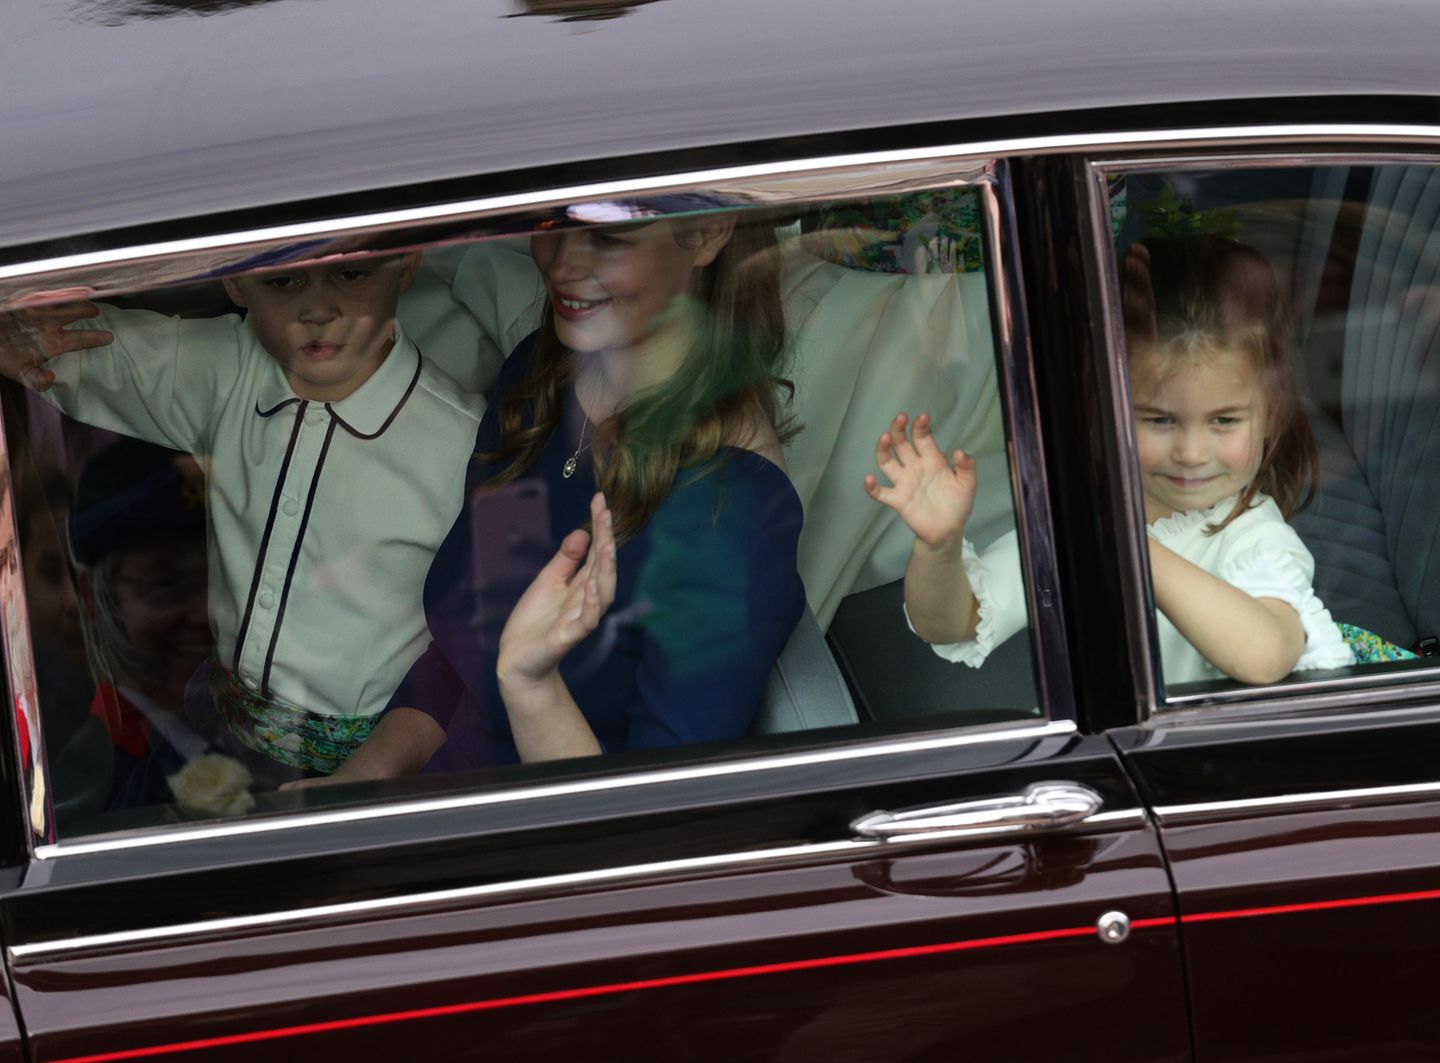 Prinzessin Eugenie heiratet: Prinzessin Charlotte winkt